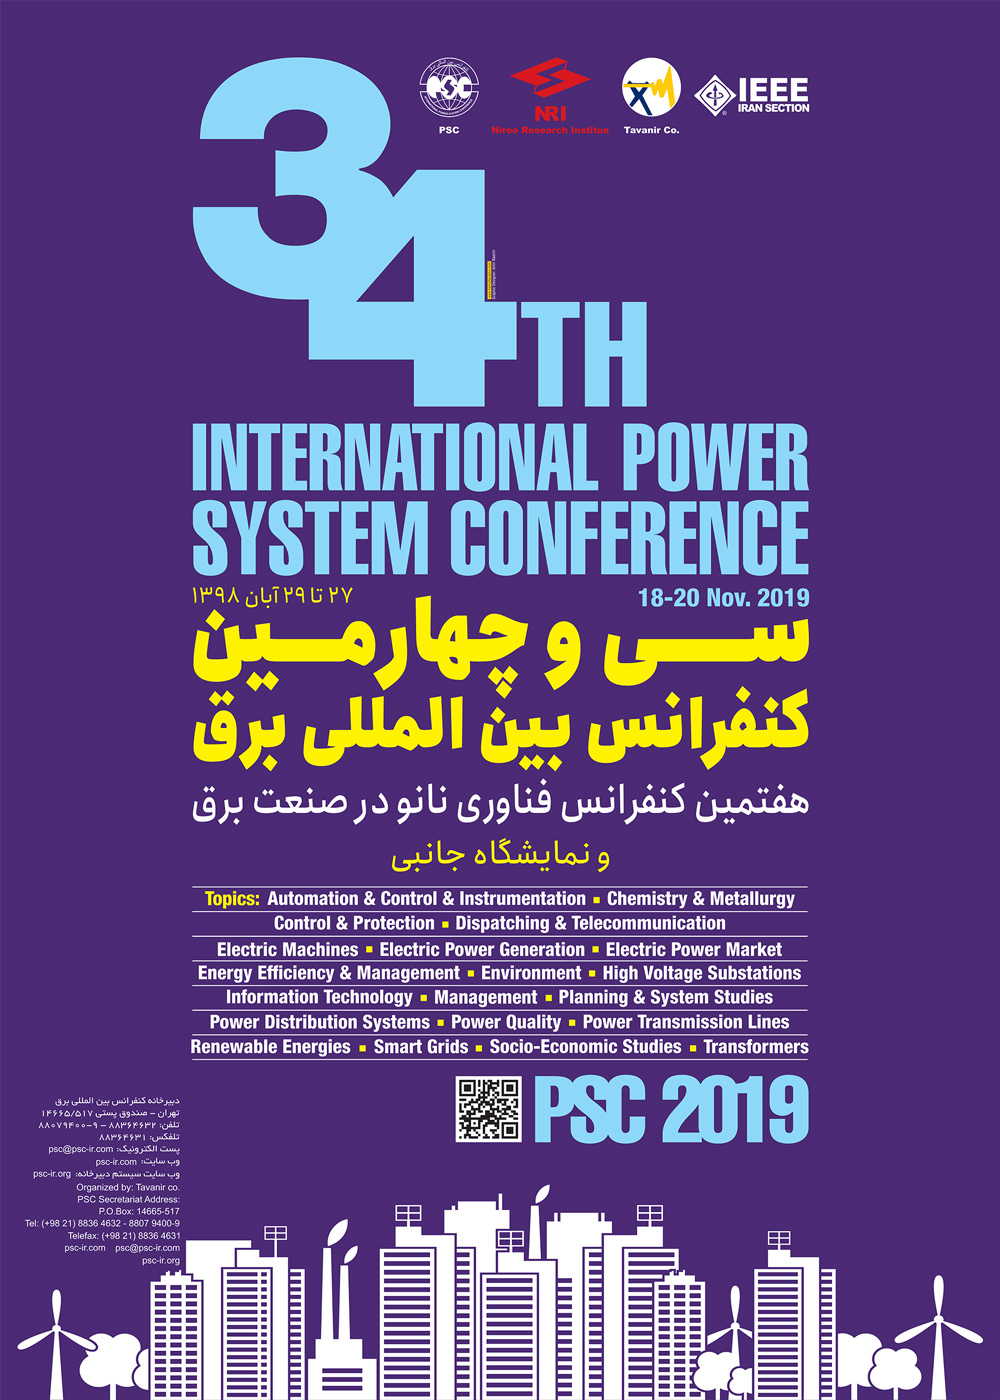 دانلود همه مقالات فارسی کیفیت برق والکترونیک قدرت ۳۴ امین کنفرانس بین المللی برق+ فایل zip